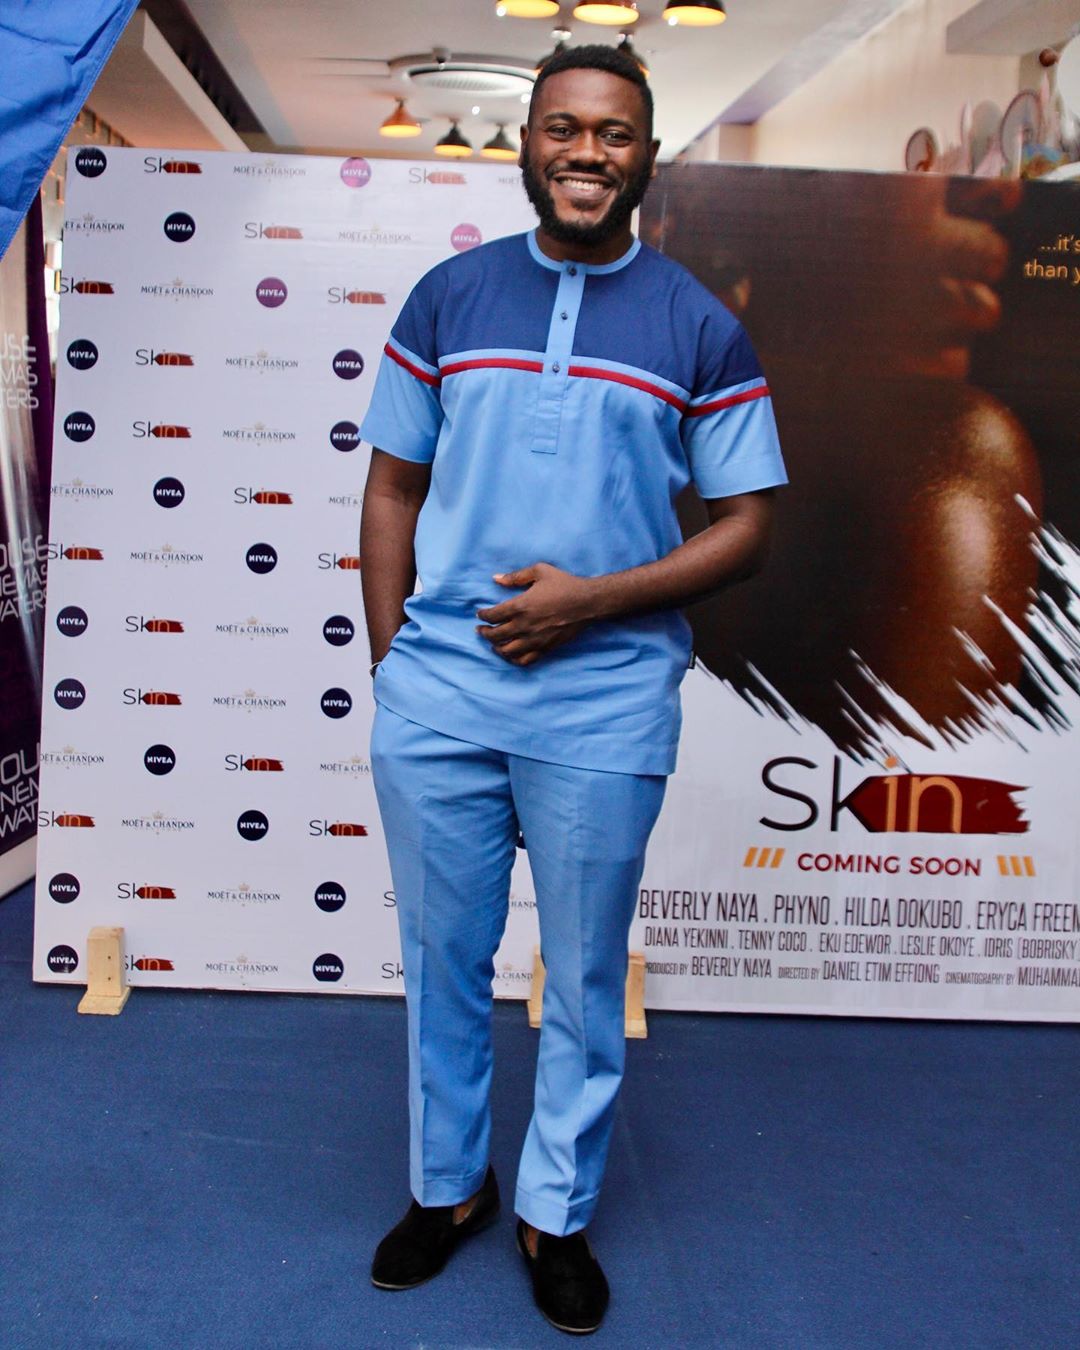  Omotola Jalade-Ekeinde, Mo Abudu, others spotted at the Premiere of Beverly Naya's Documentary “Skin”